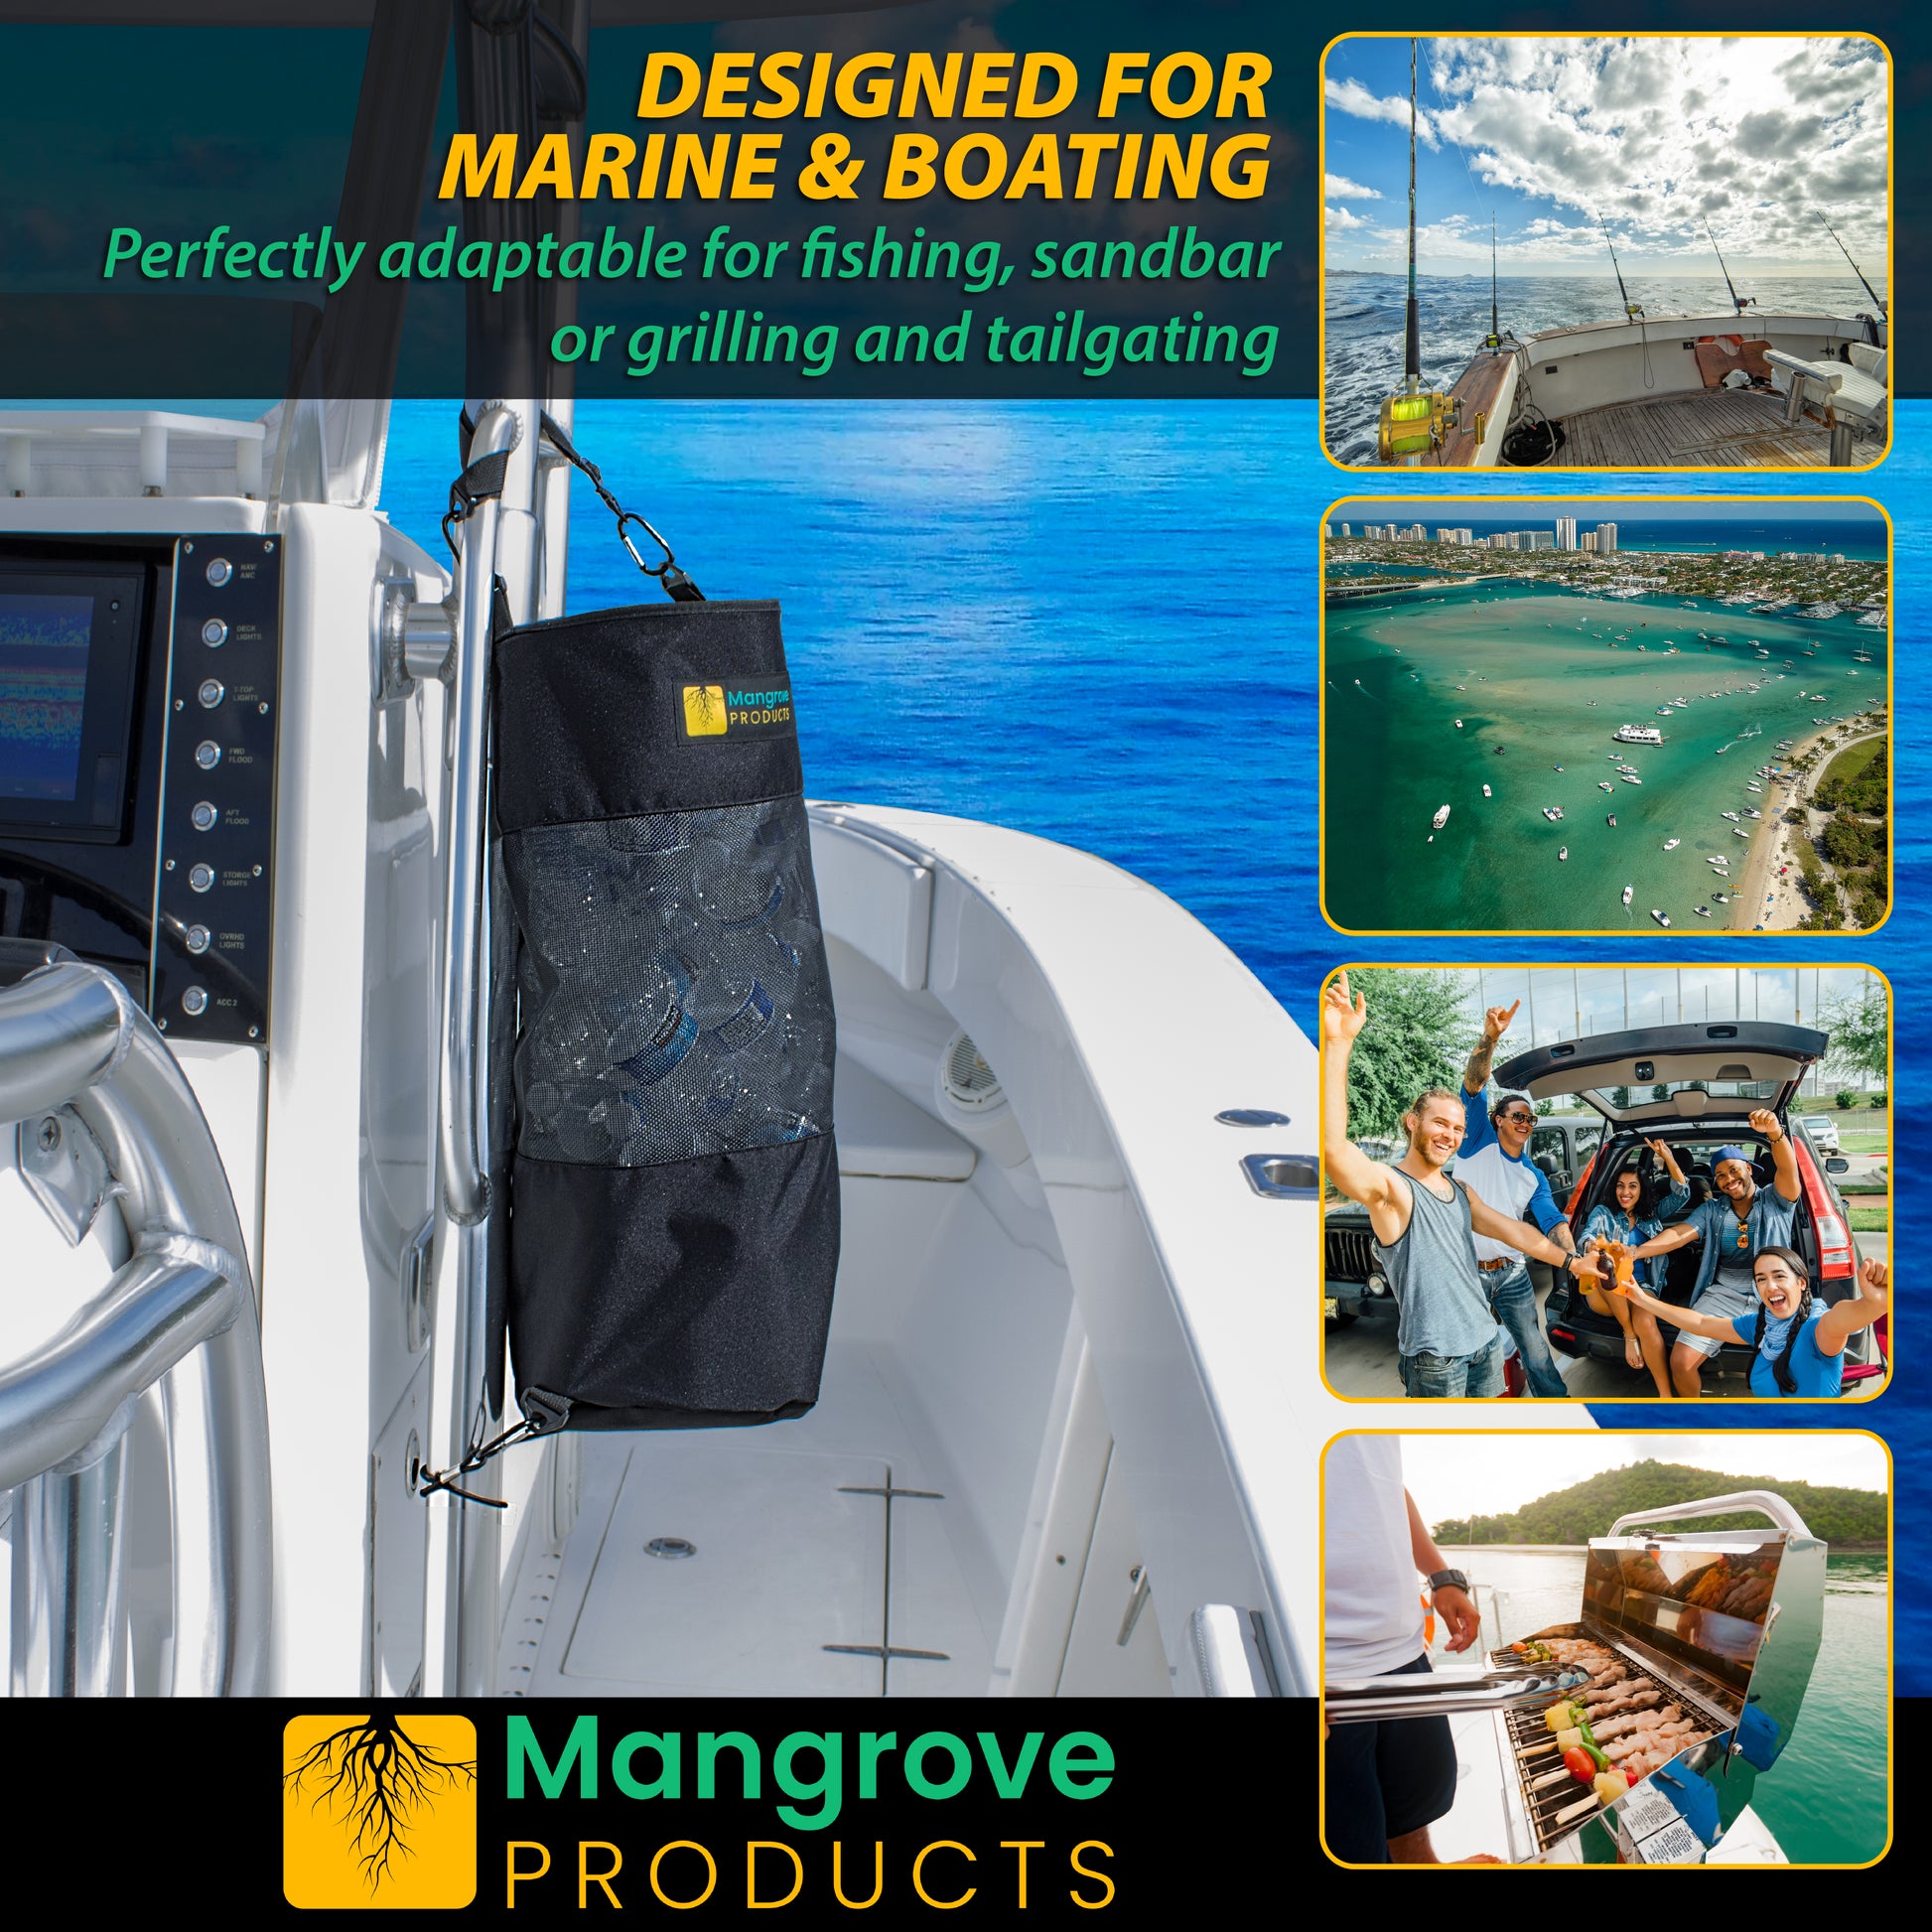 https://mangroveproduct.com/cdn/shop/files/IG1-C_302d4b6e-ae9a-419a-8e41-b298e521f437.jpg?v=1699846320&width=1946